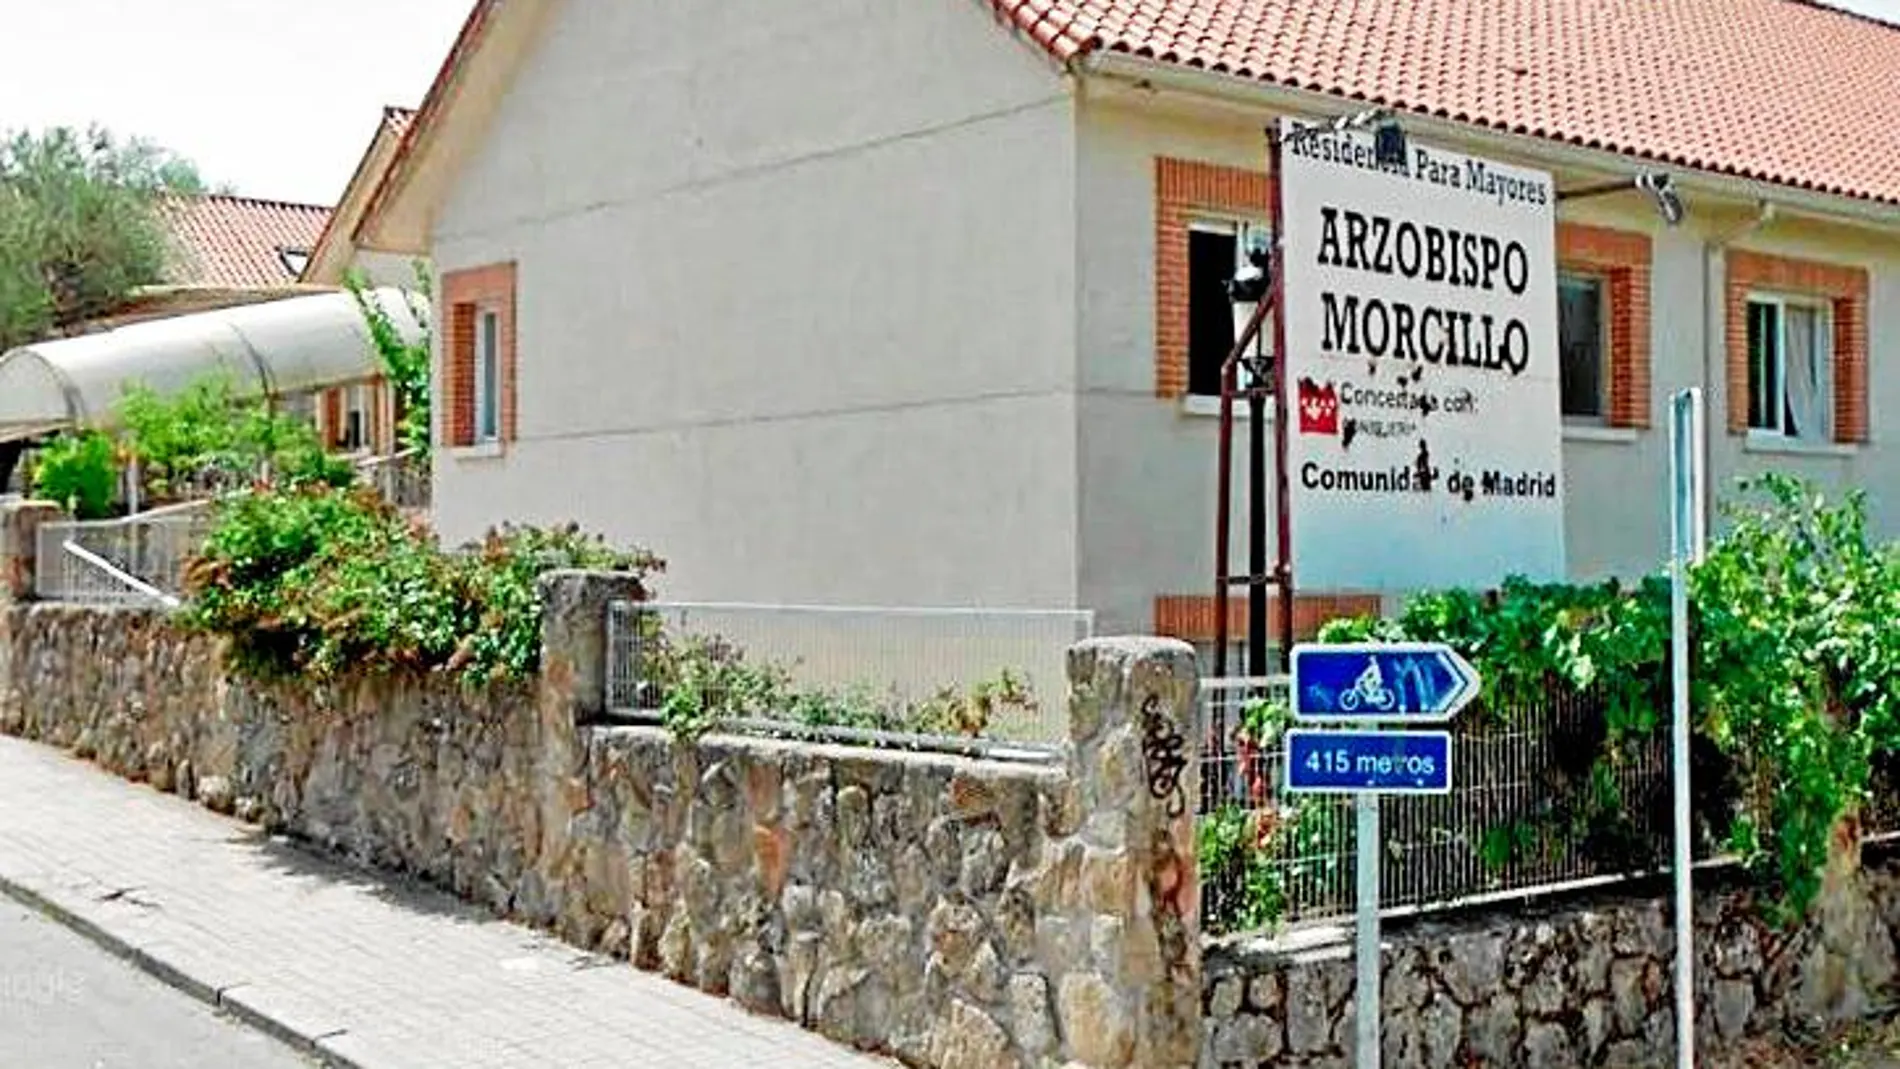 La dirección de la residencia Arzobispo Morcillo fue multada por el mal estado de los internos y las instalaciones